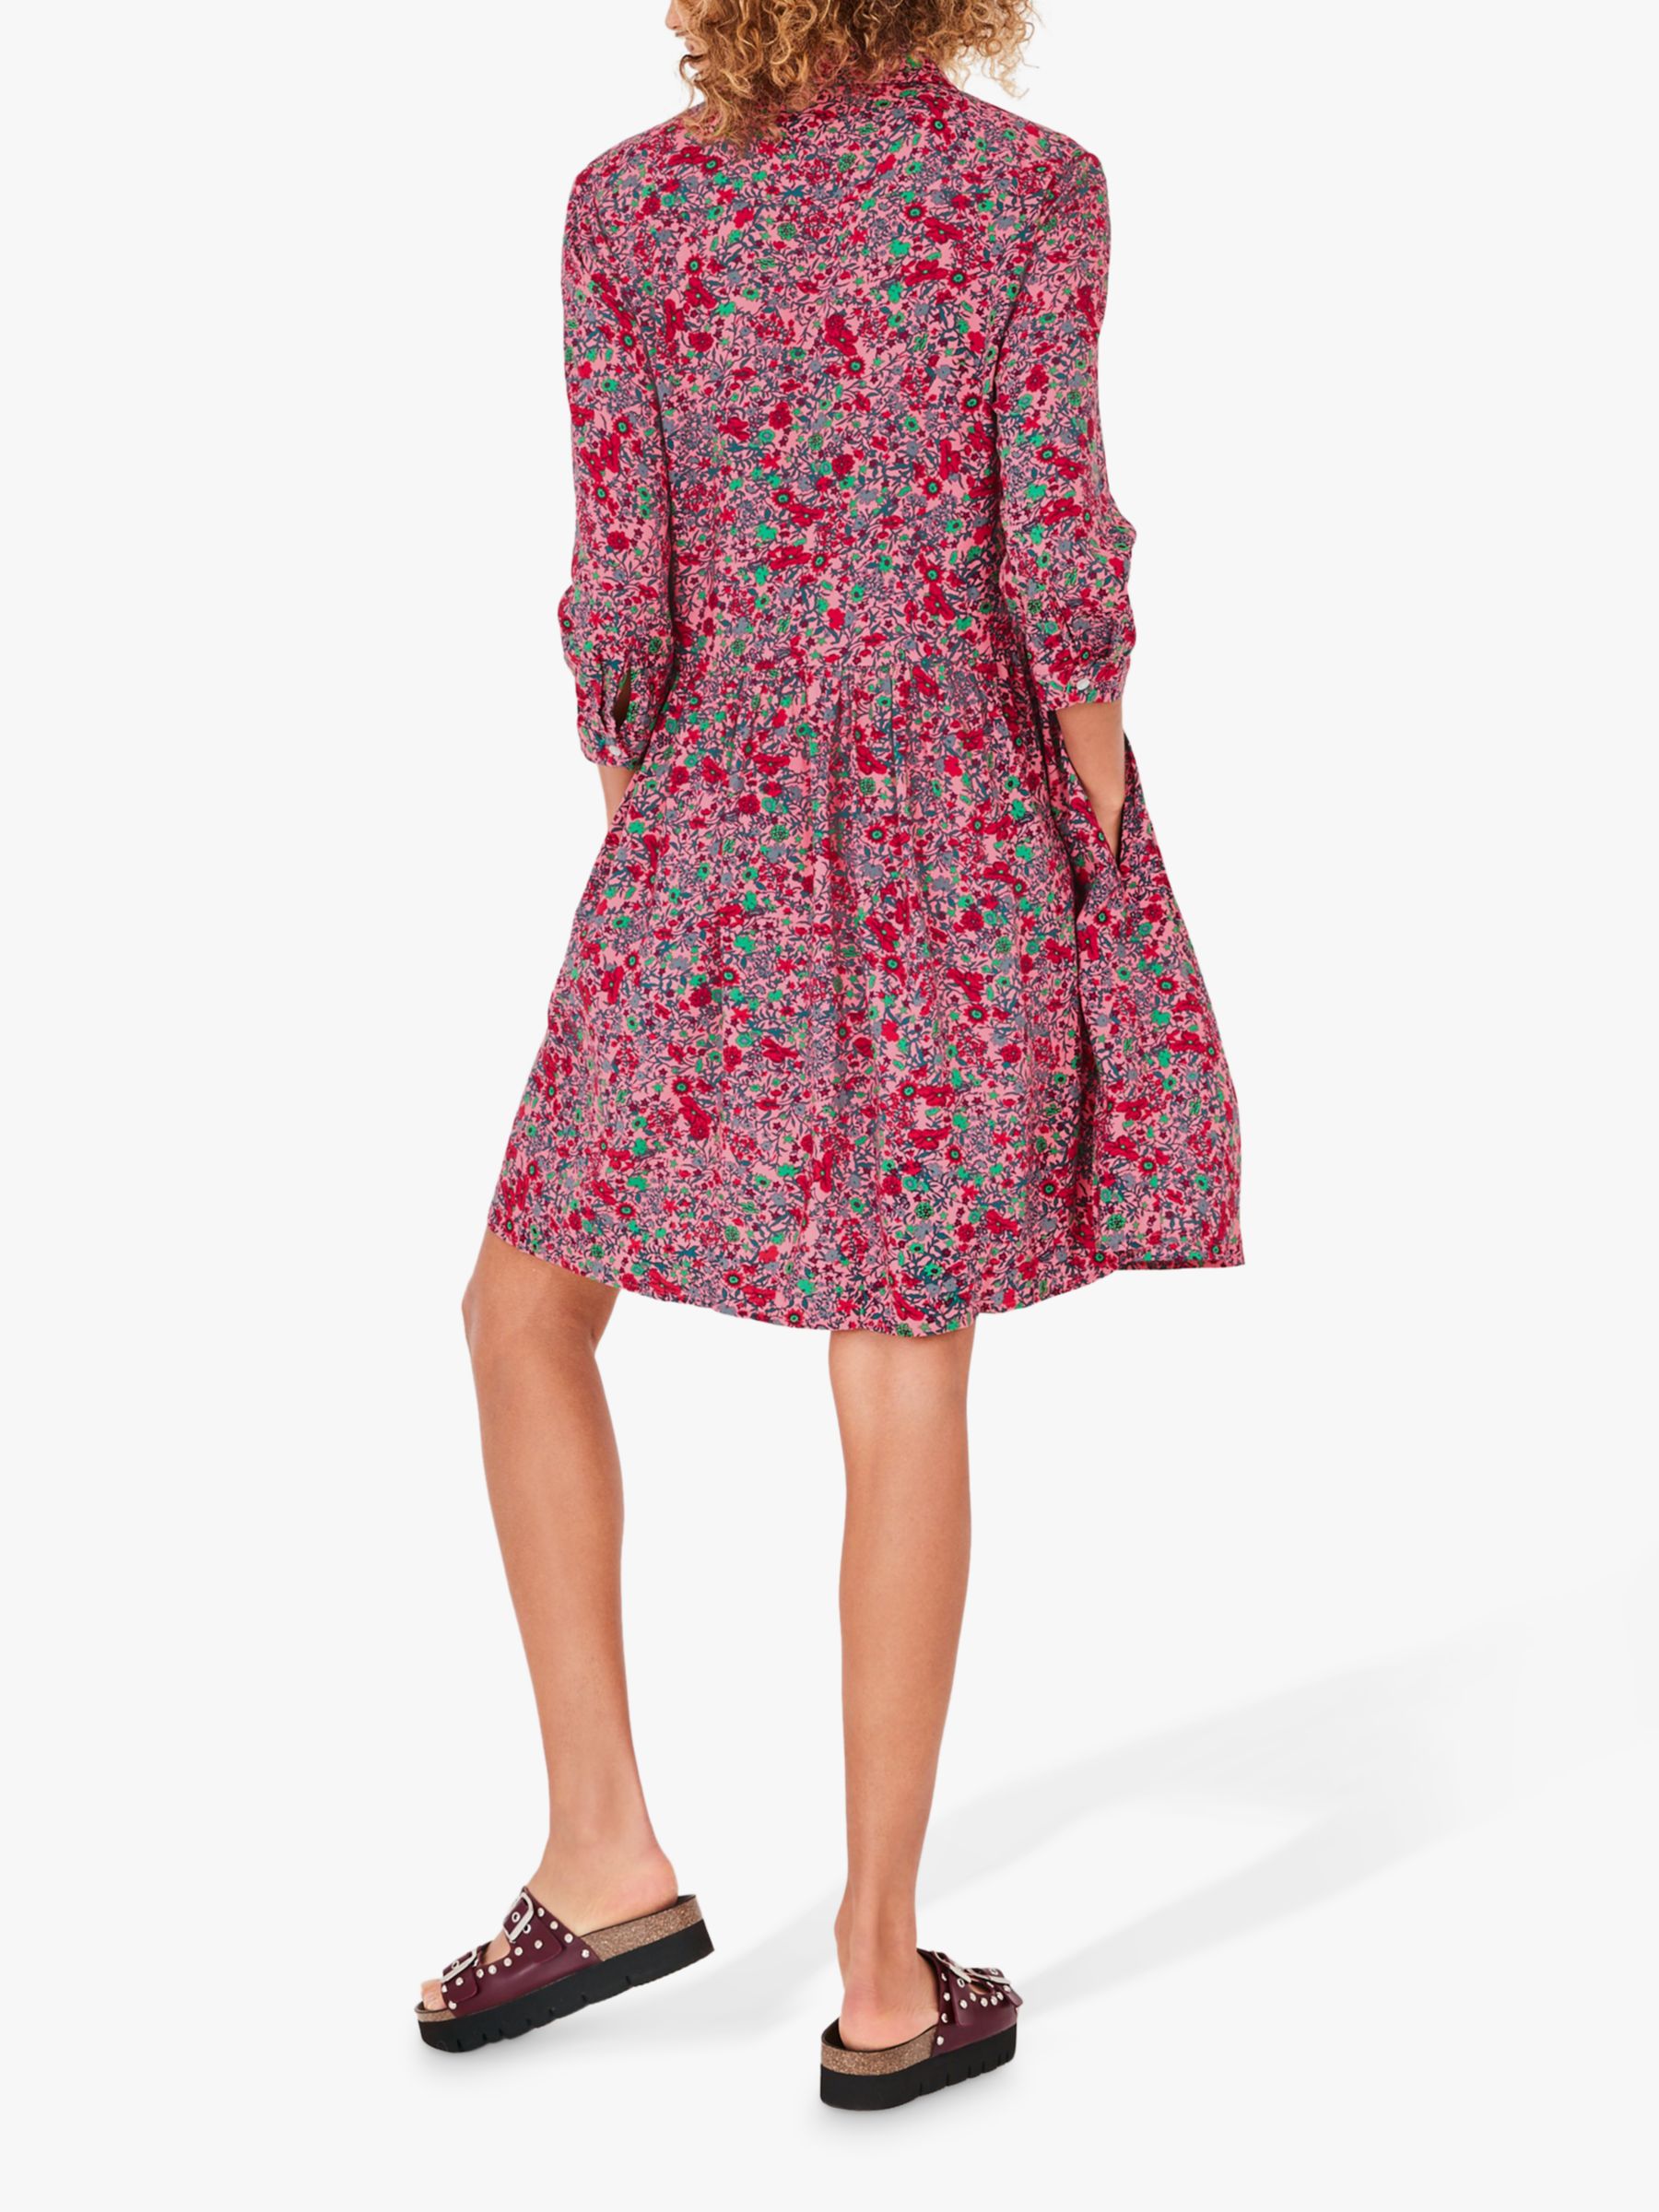 hush Emanuelle Vintage Floral Print Shirt Dress, Pink/Multi at John ...